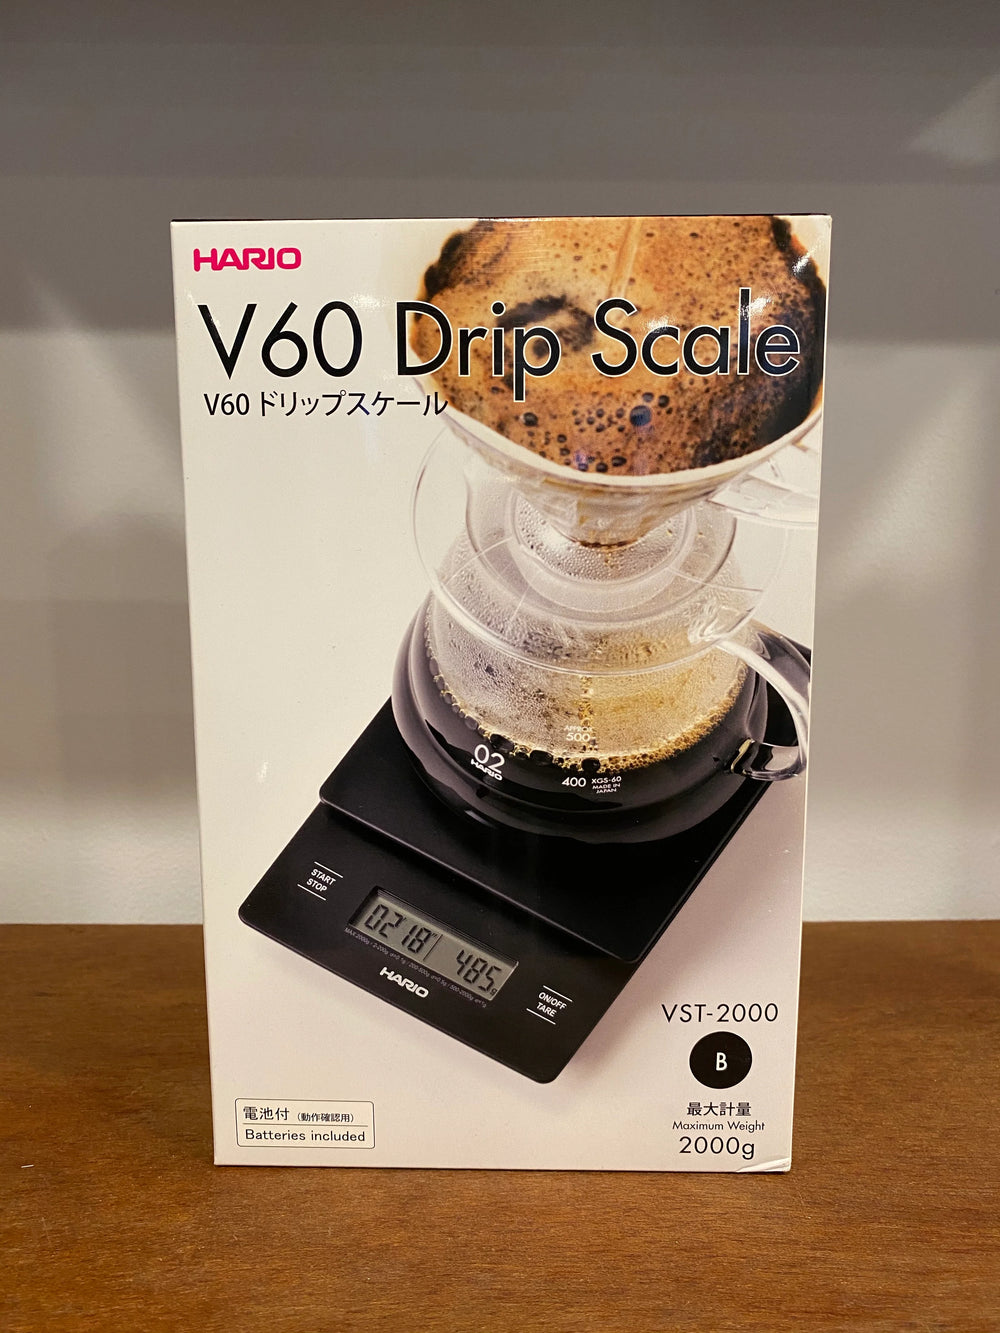 Buy Hario V60 Drip Scale VST 2000B